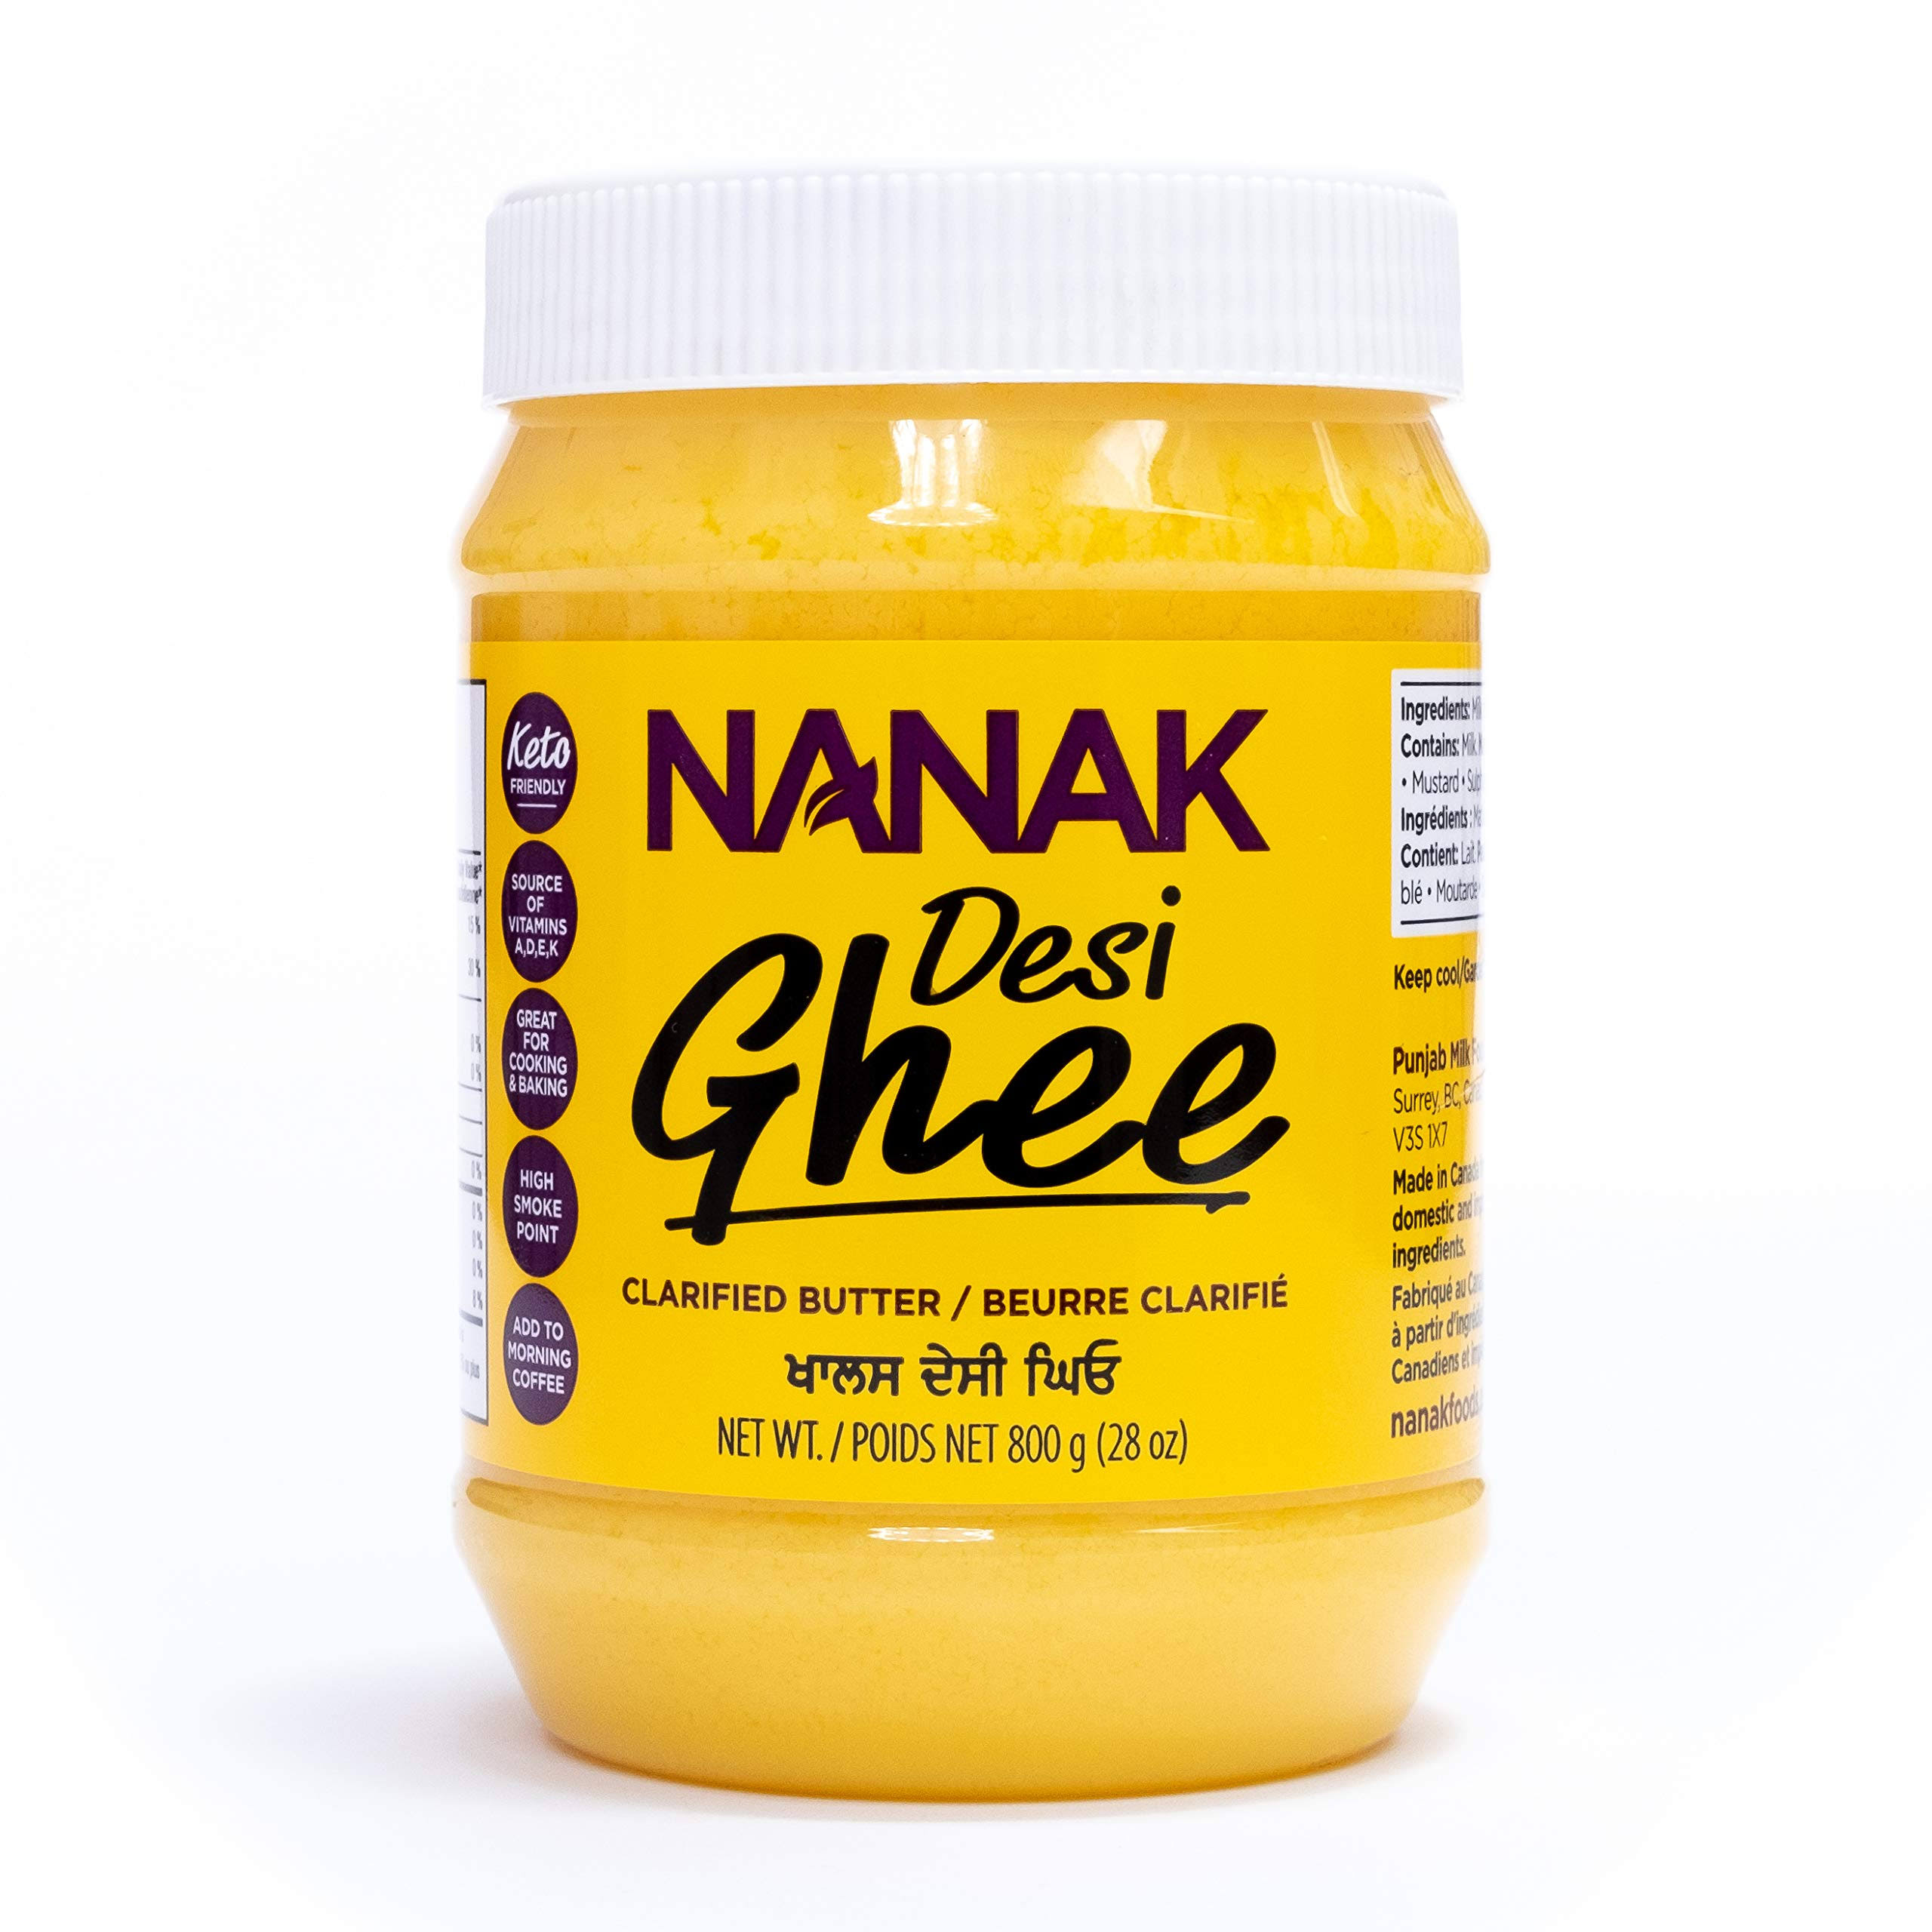 Nanak Pure Desi Ghee Clarified Butter - 28oz